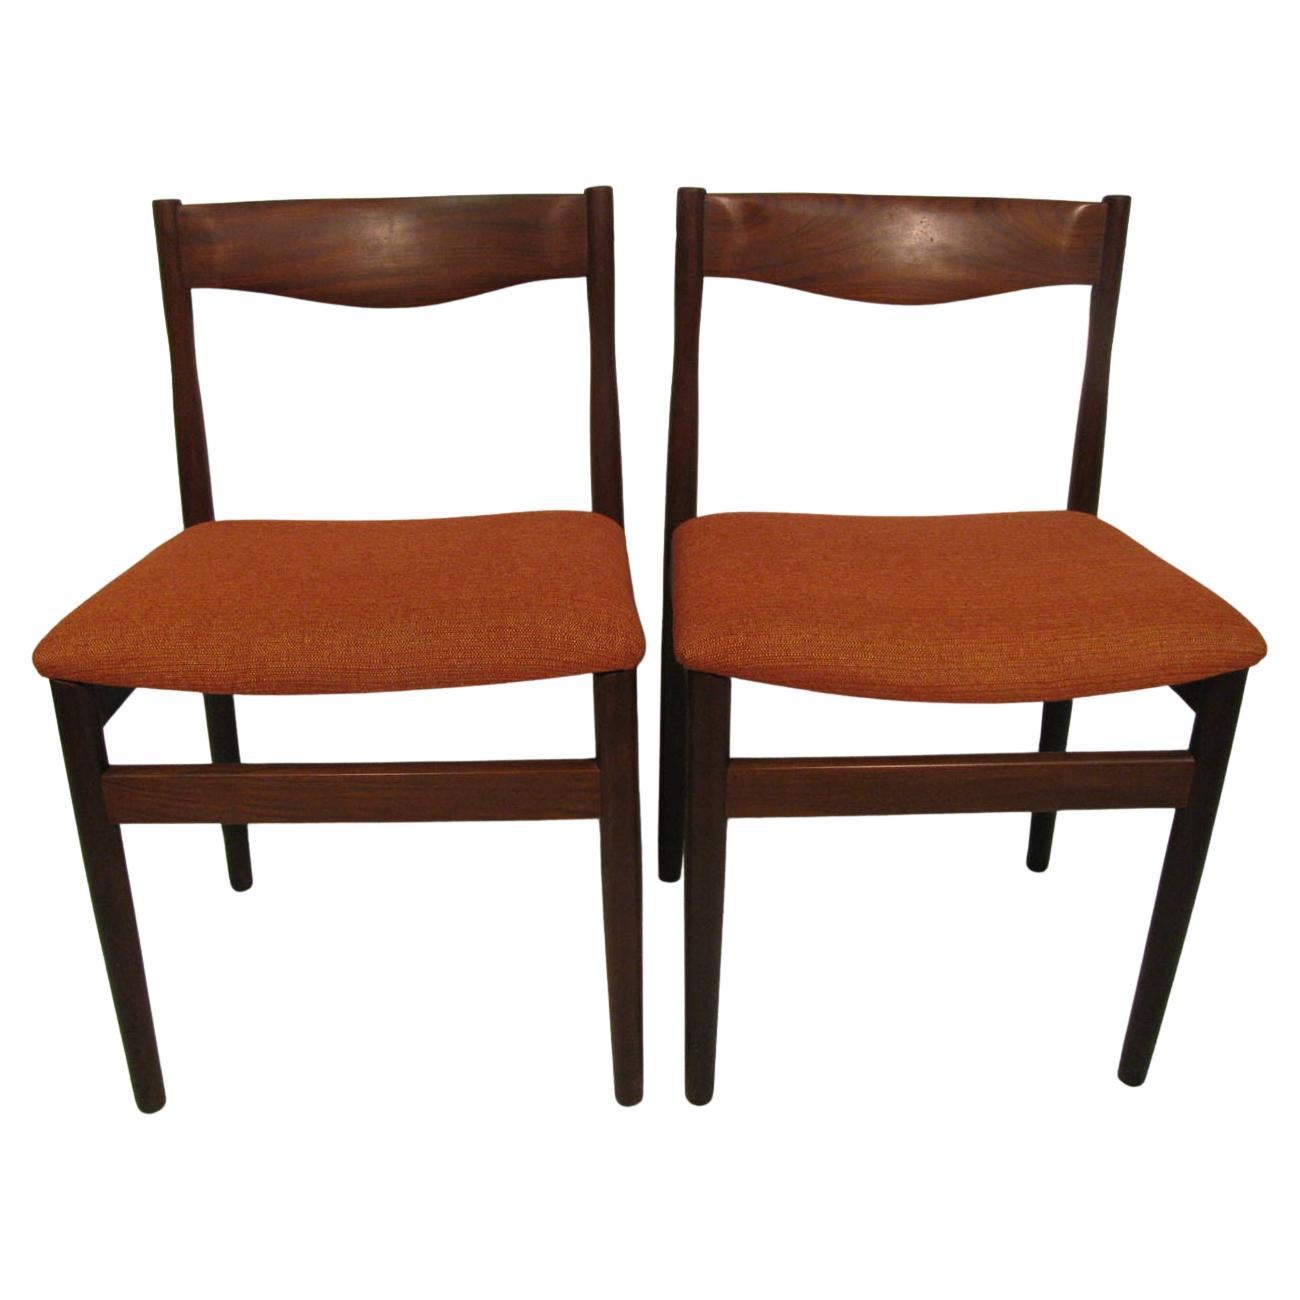 Sièges nouvellement rembourrés avec des cadres en bois de teck. De belles chaises en excellent état vintage, très serrées et confortables aussi. Les dos sont sculptés et bien soutenus. 